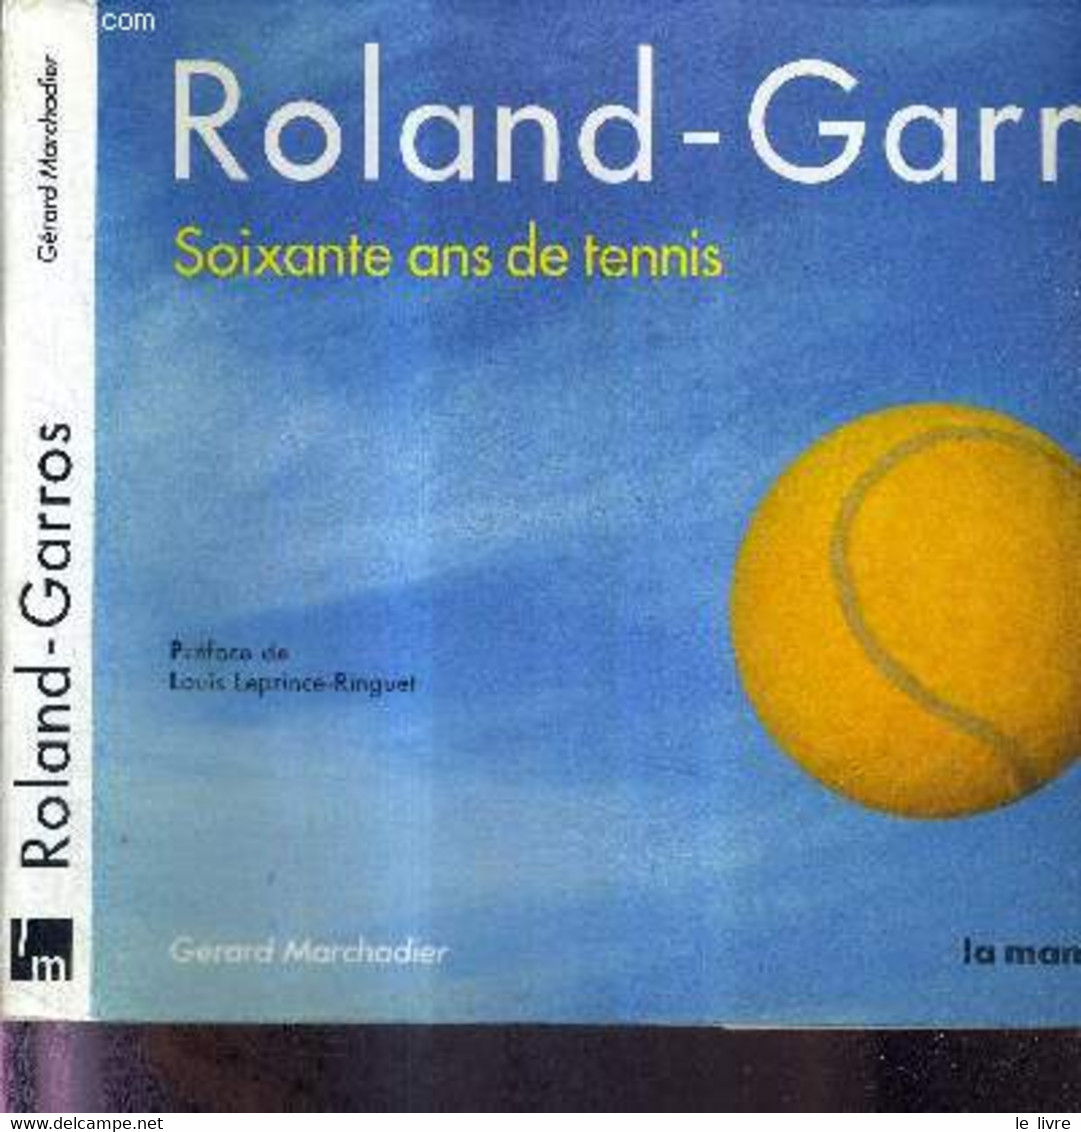 ROLAND-GARROS - SOIXANTE ANS DE TENNIS + DEDICACE DE Arantxa Sánchez Vicario - MARCHADIER GERARD - 1986 - Libri